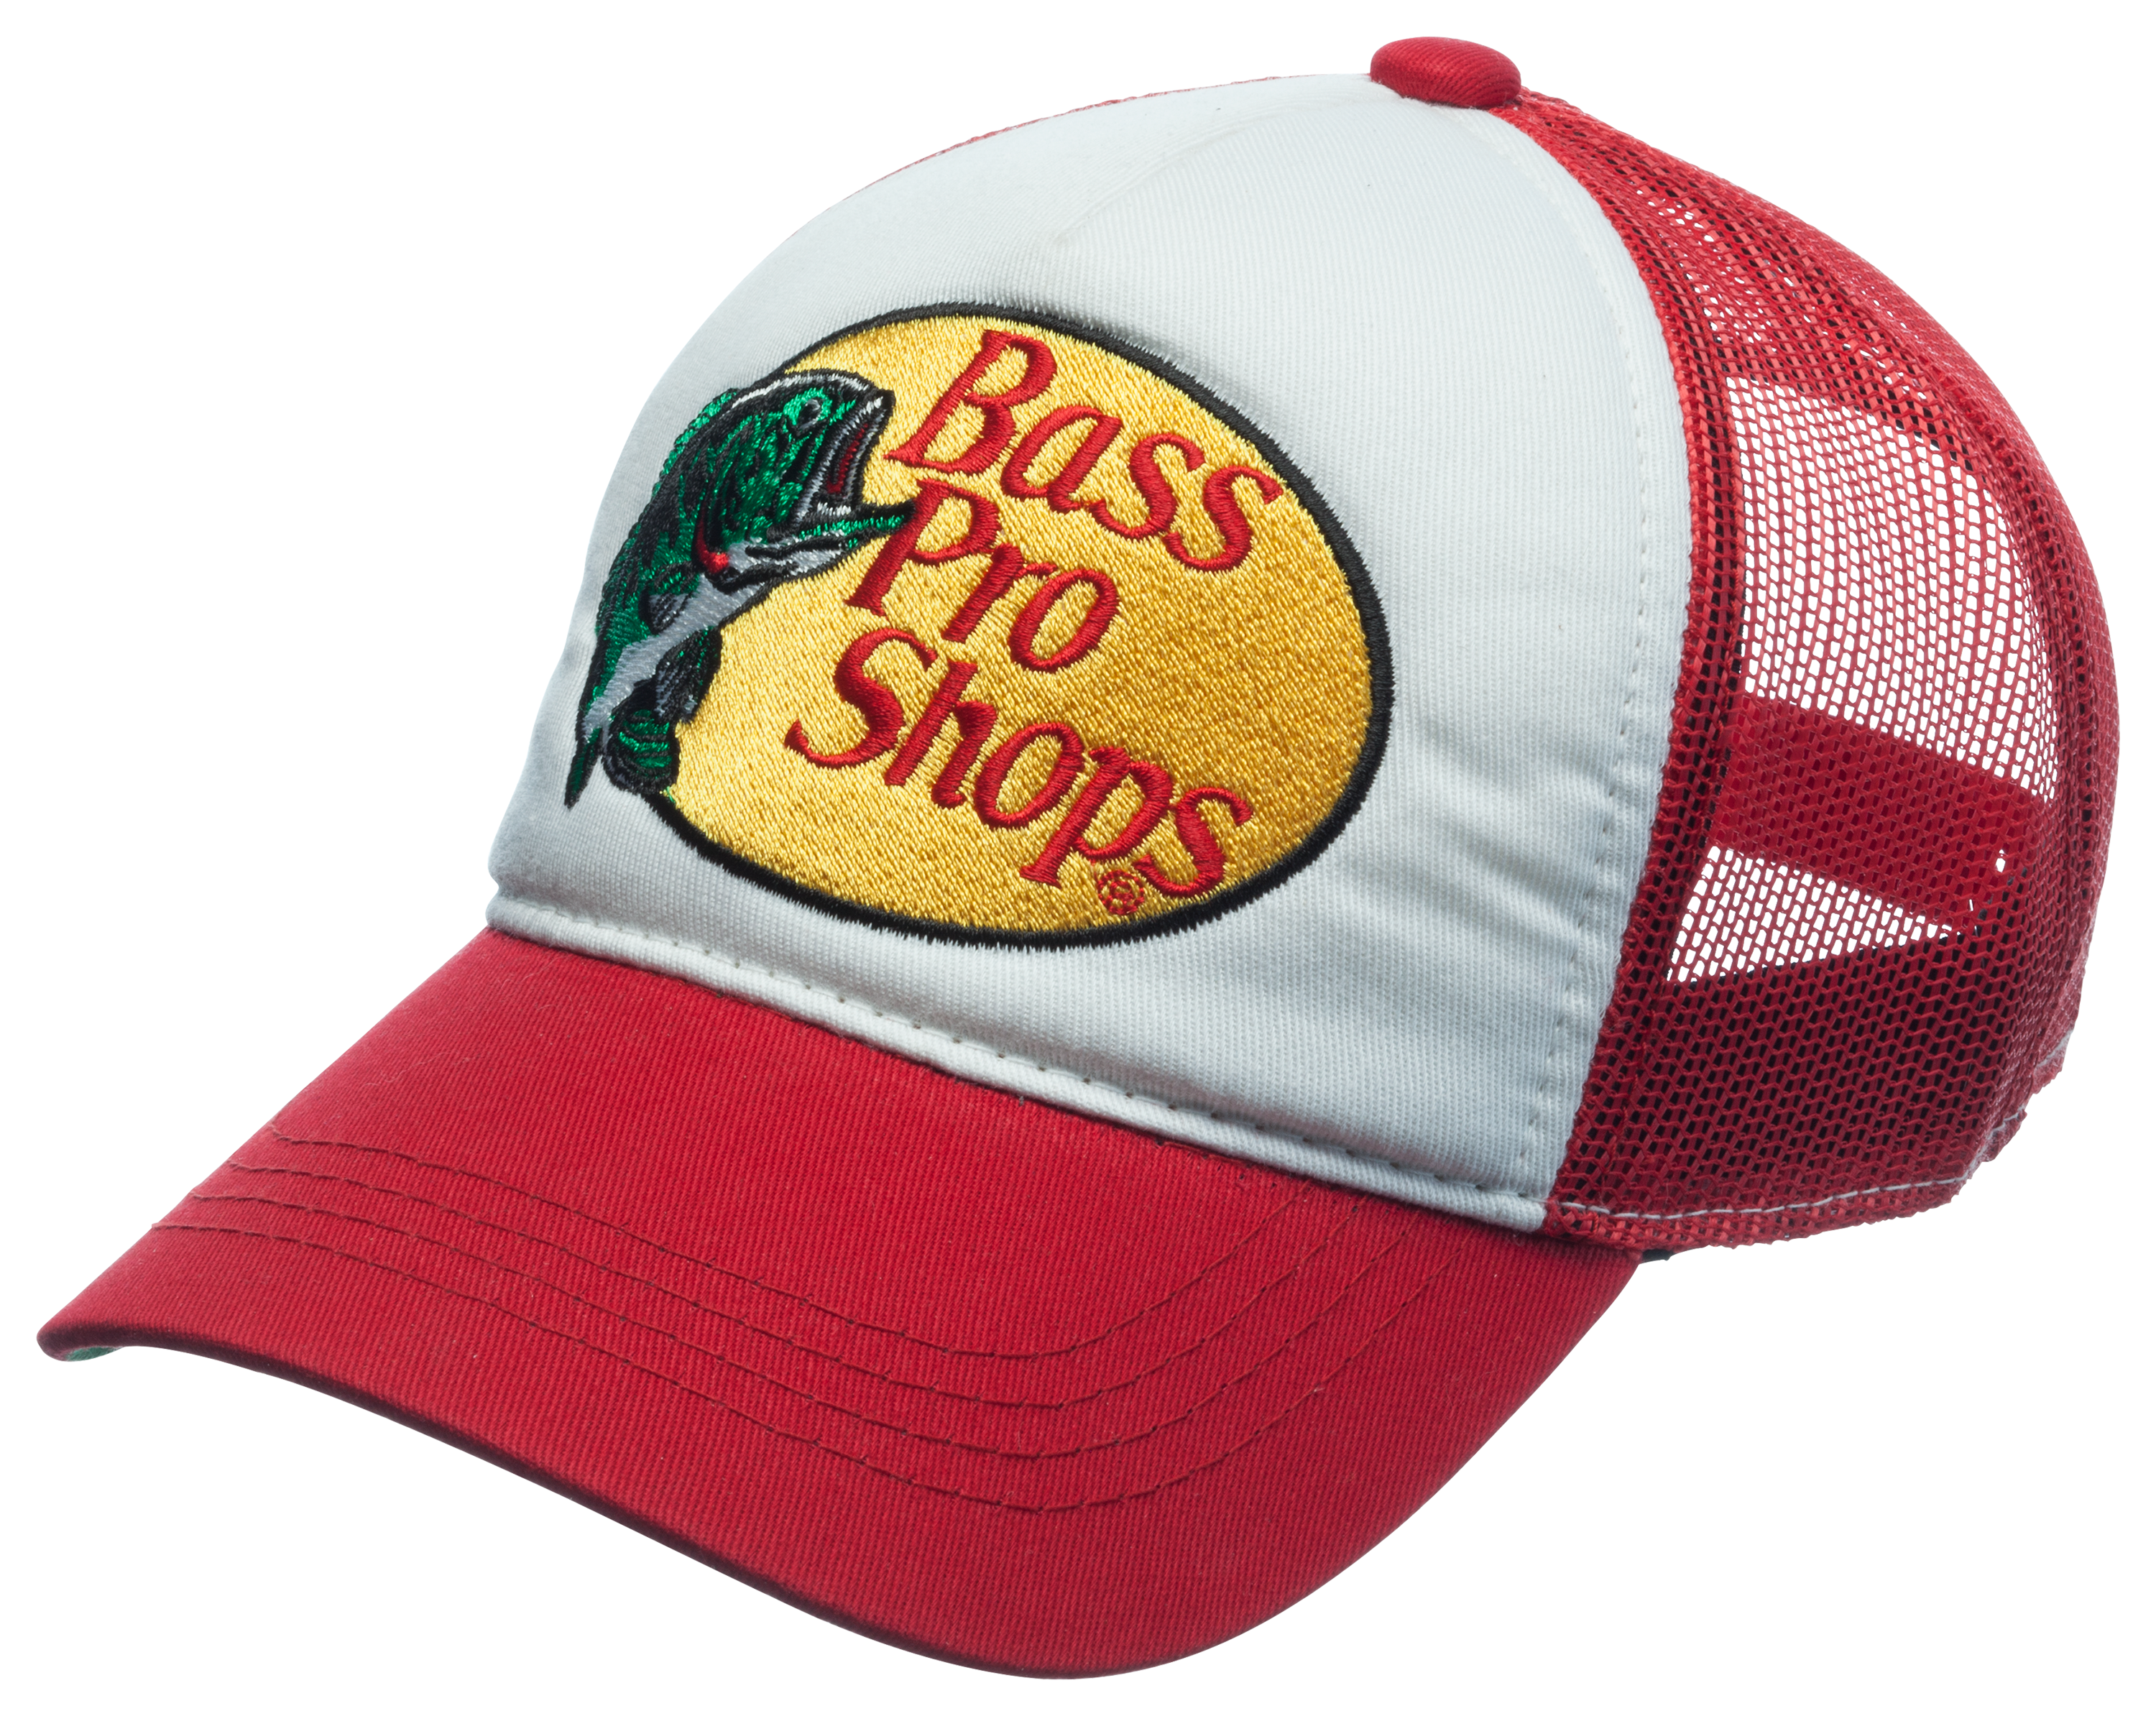 Bass Pro Shops® Trucker Cap